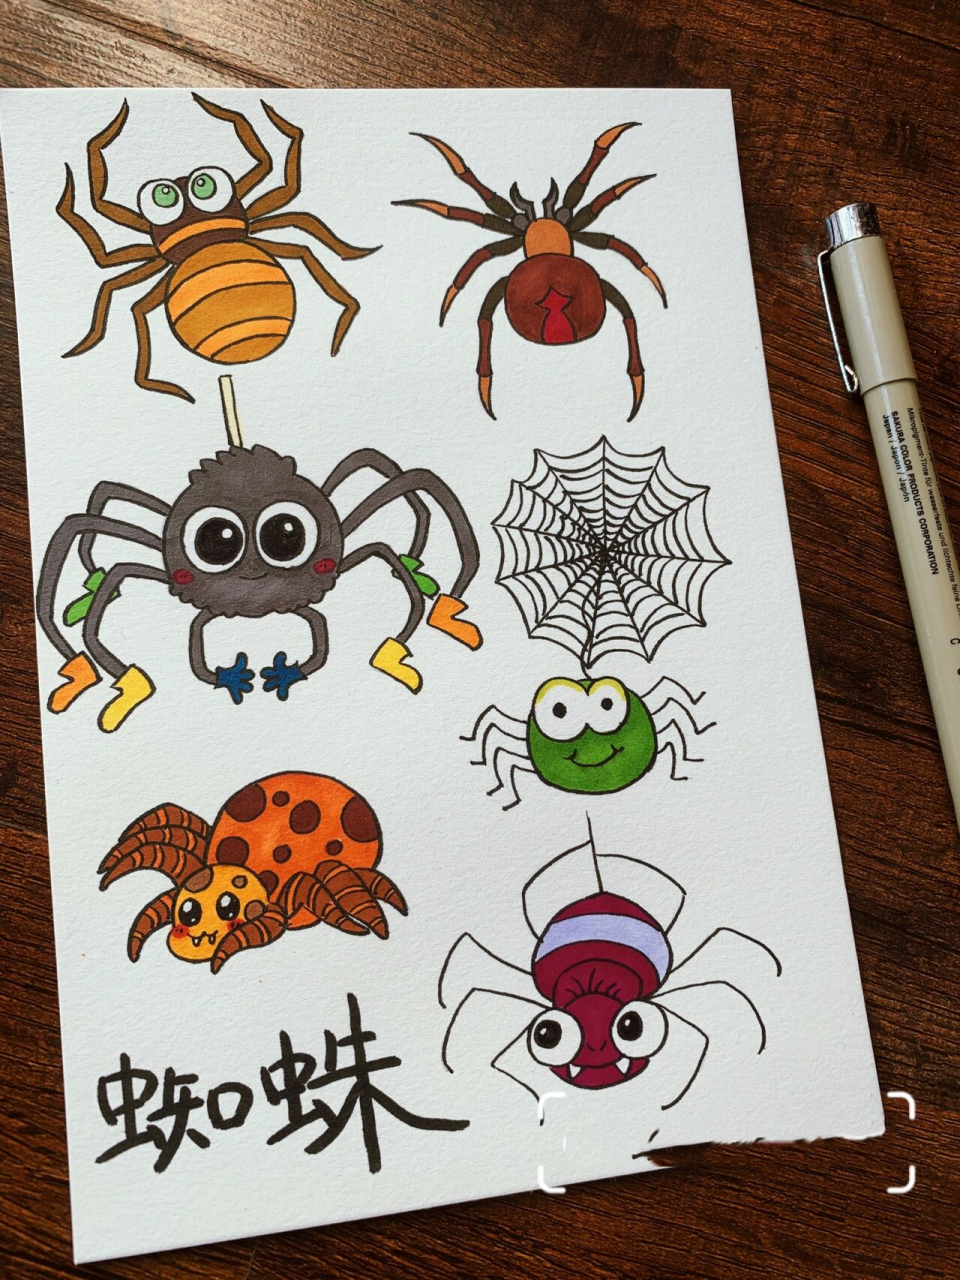 苍蝇和蜘蛛简笔画图片